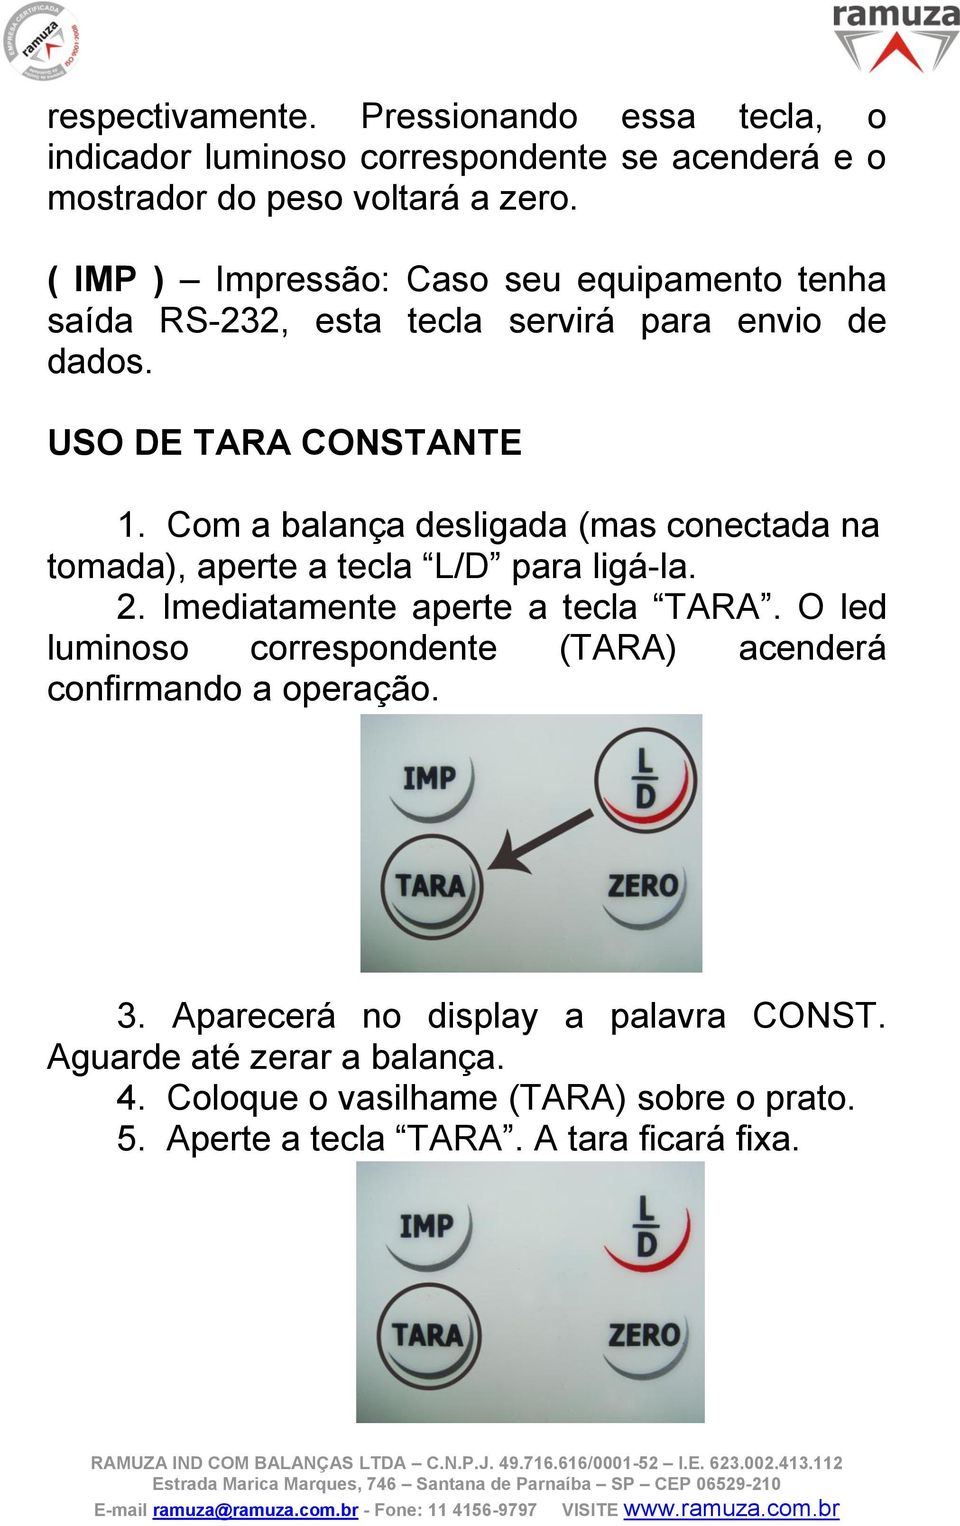 Com a balança desligada (mas conectada na tomada), aperte a tecla L/D para ligá-la. 2. Imediatamente aperte a tecla TARA.